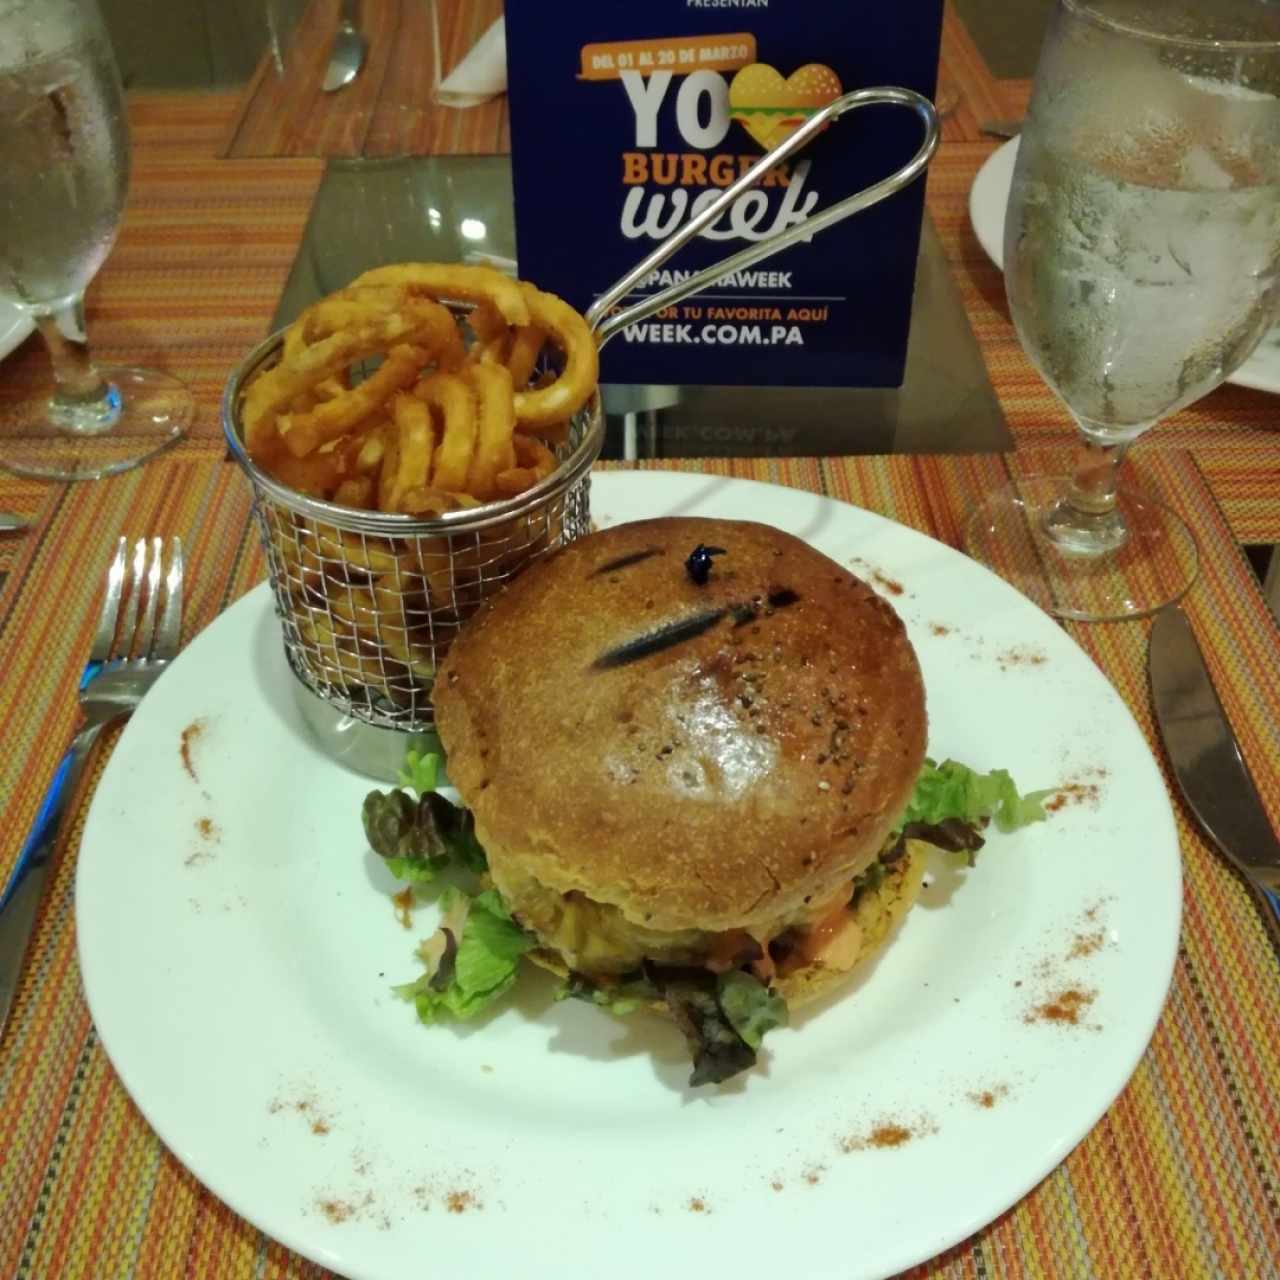 La Rompecolchon Burger